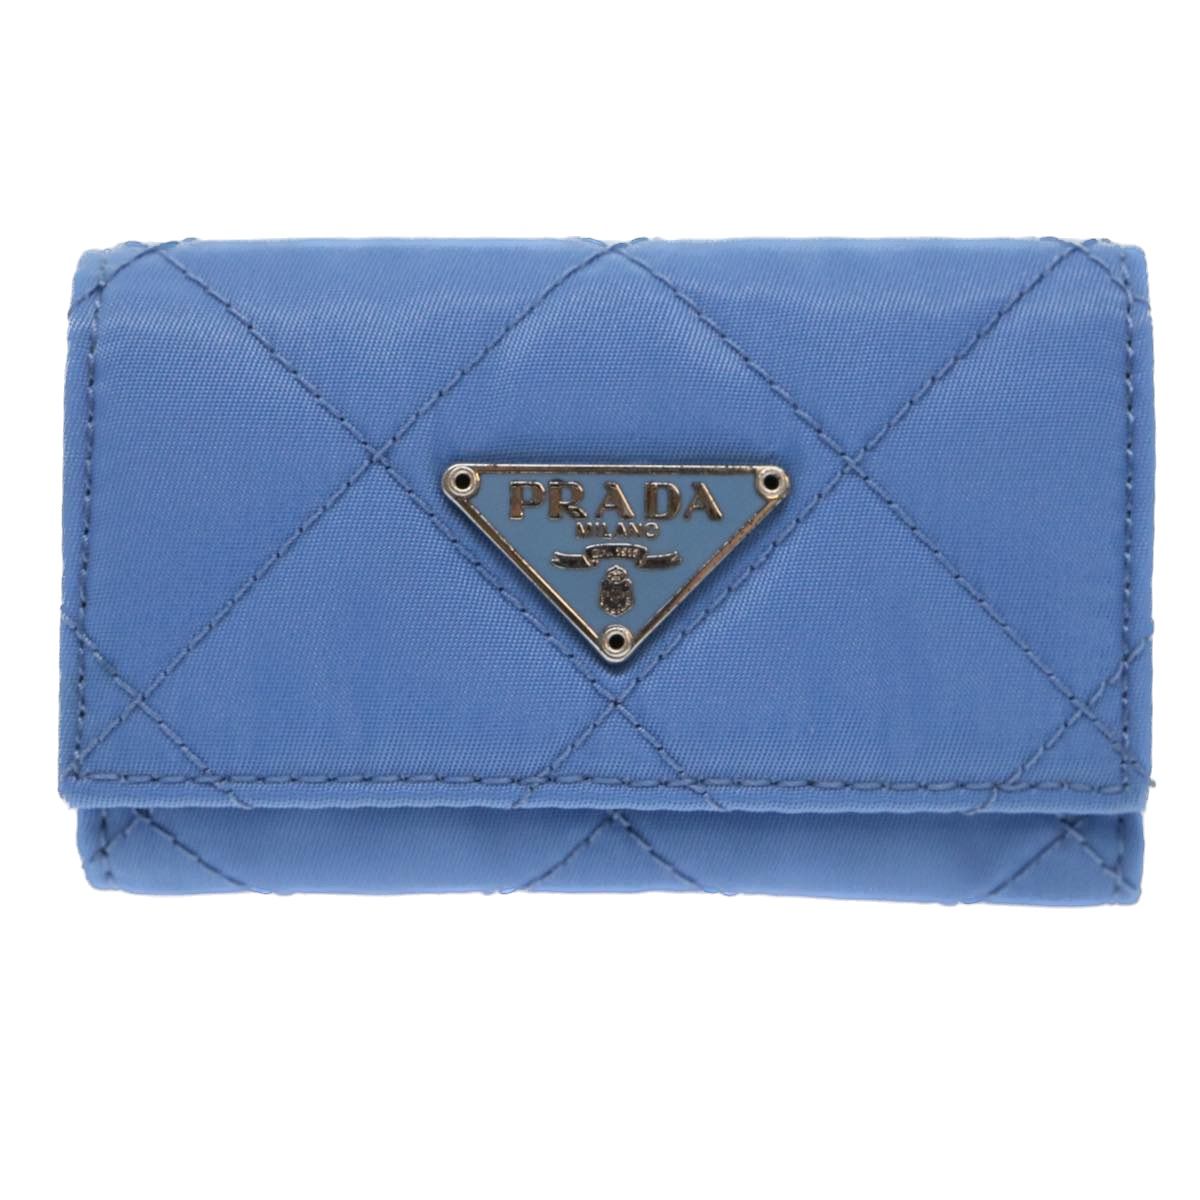 Prada Prada wallet | Grailed